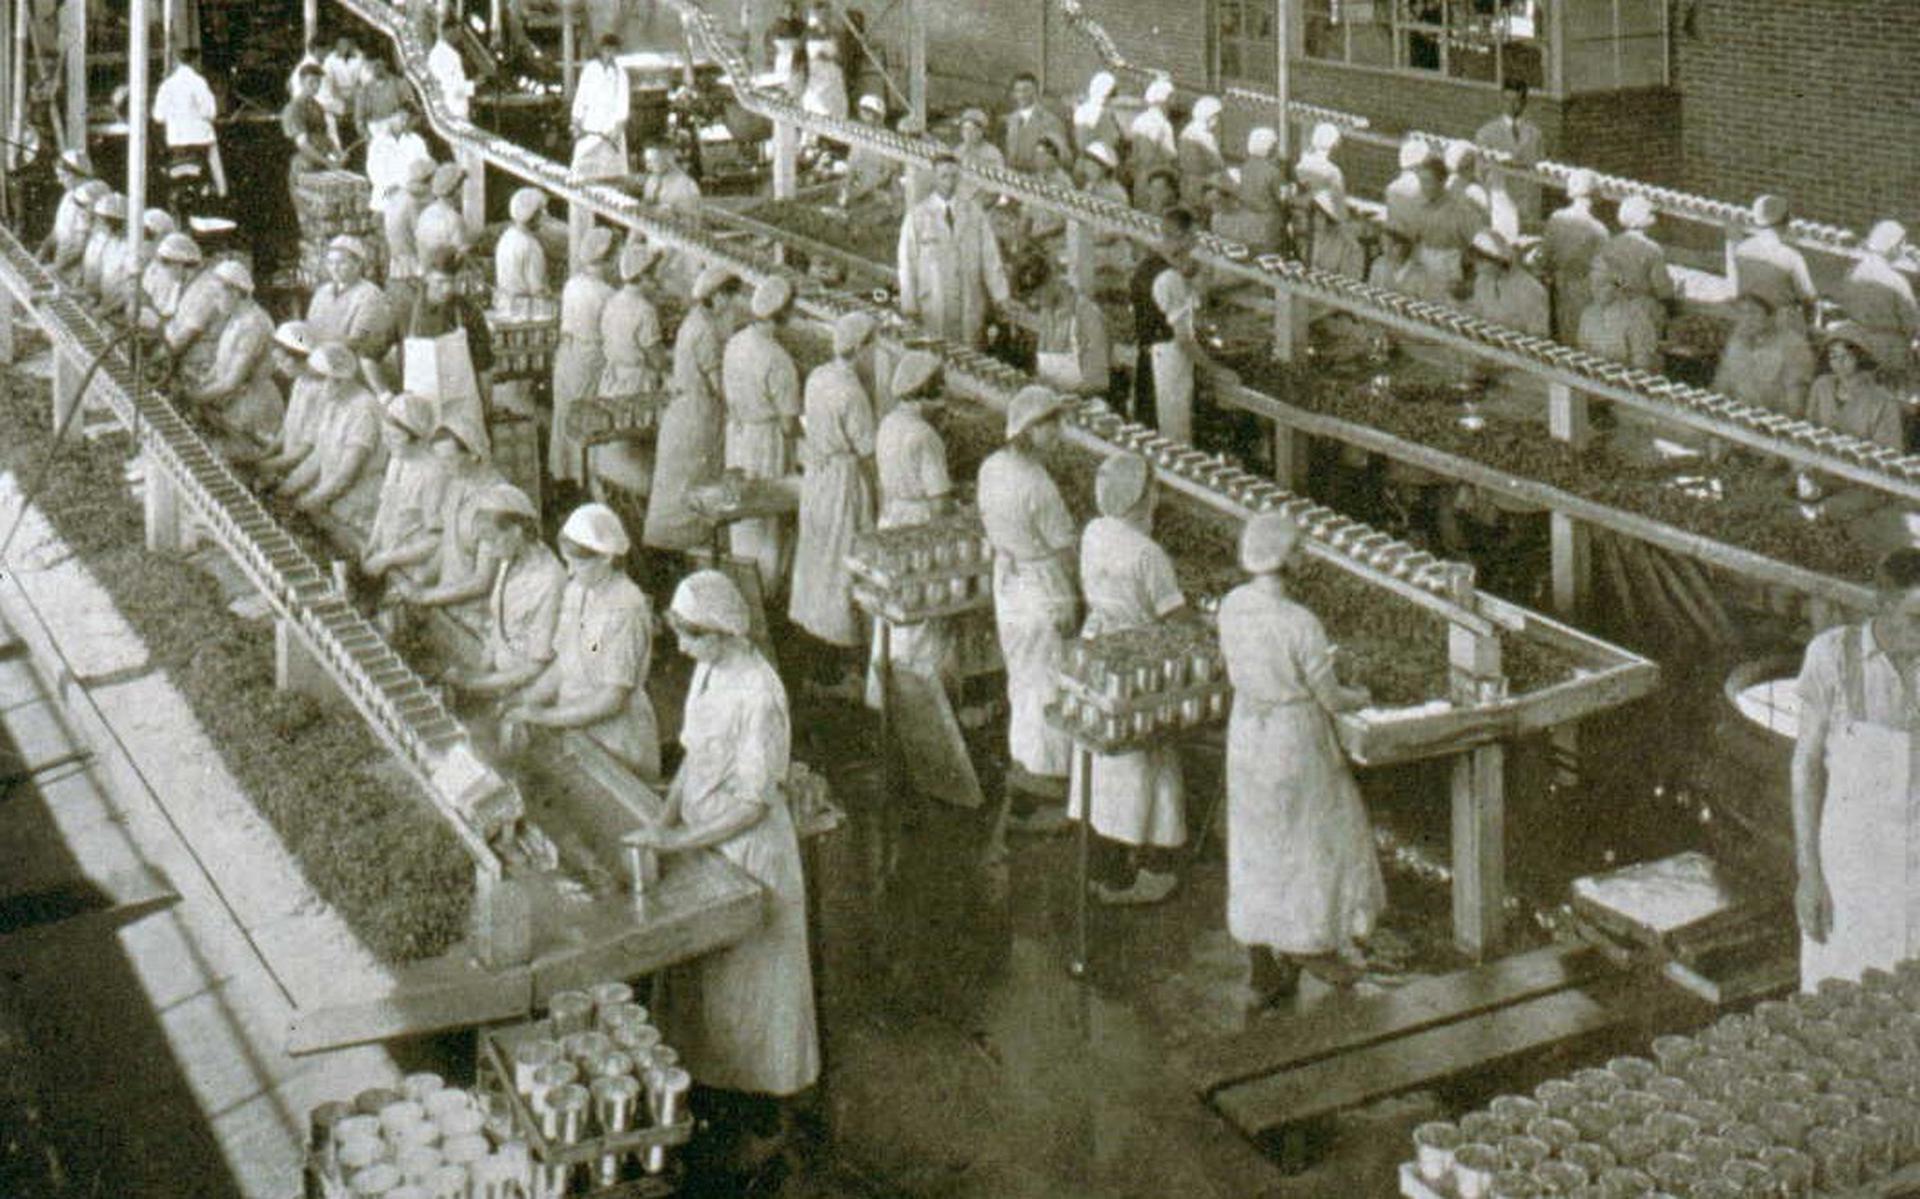 In de fabriek Aardenburg zijn medewerkers conserven aan het inpakken. Dit is waarschijnlijk tussen 1935 en 1939.